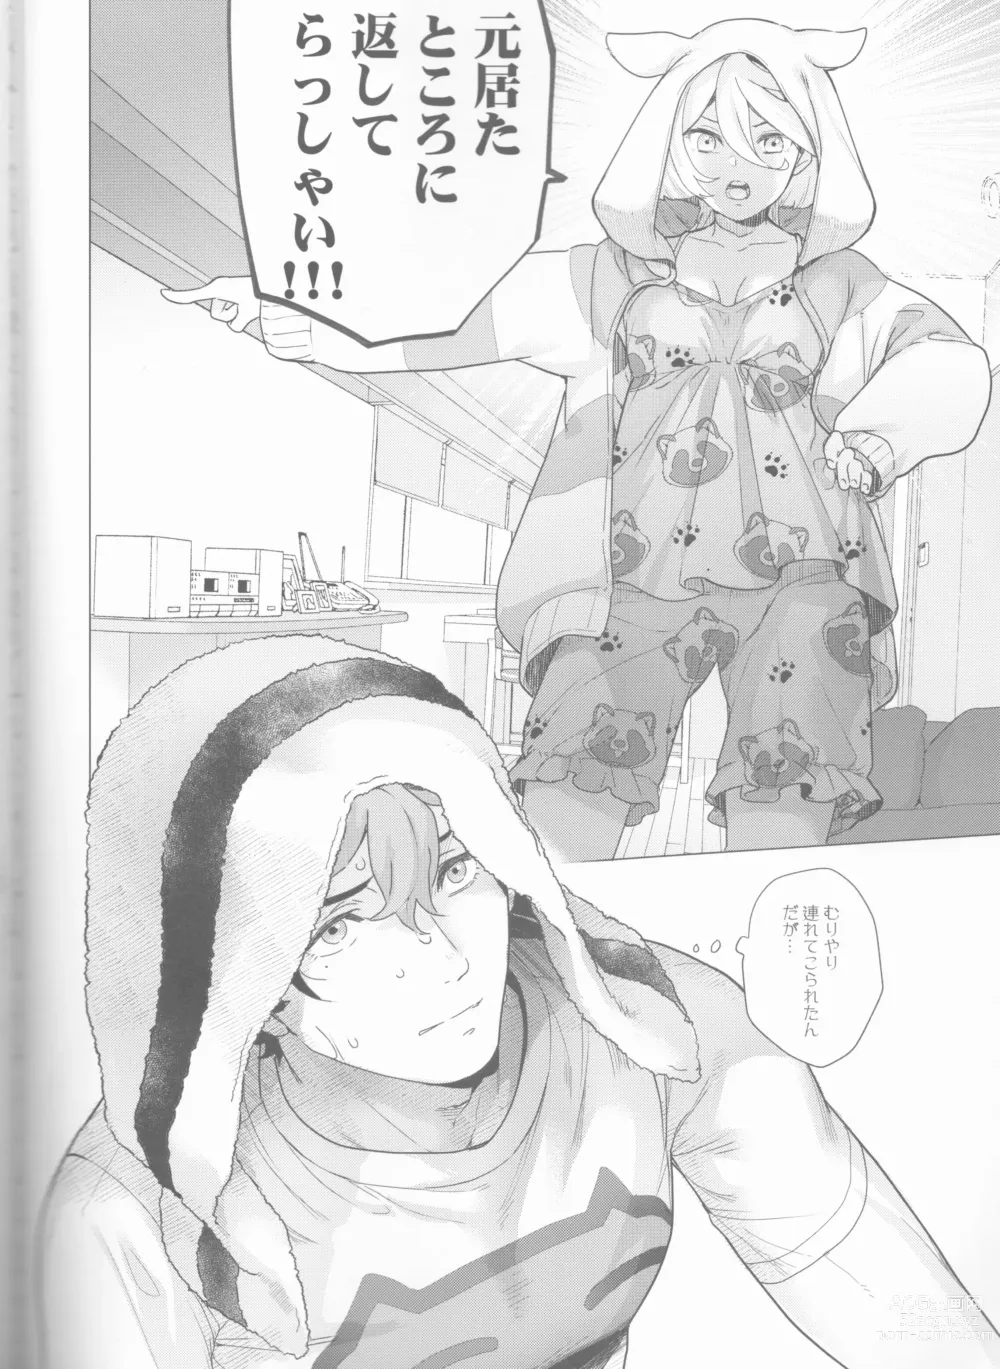 Page 3 of doujinshi Inu o Hirotte mo Ii desu ka